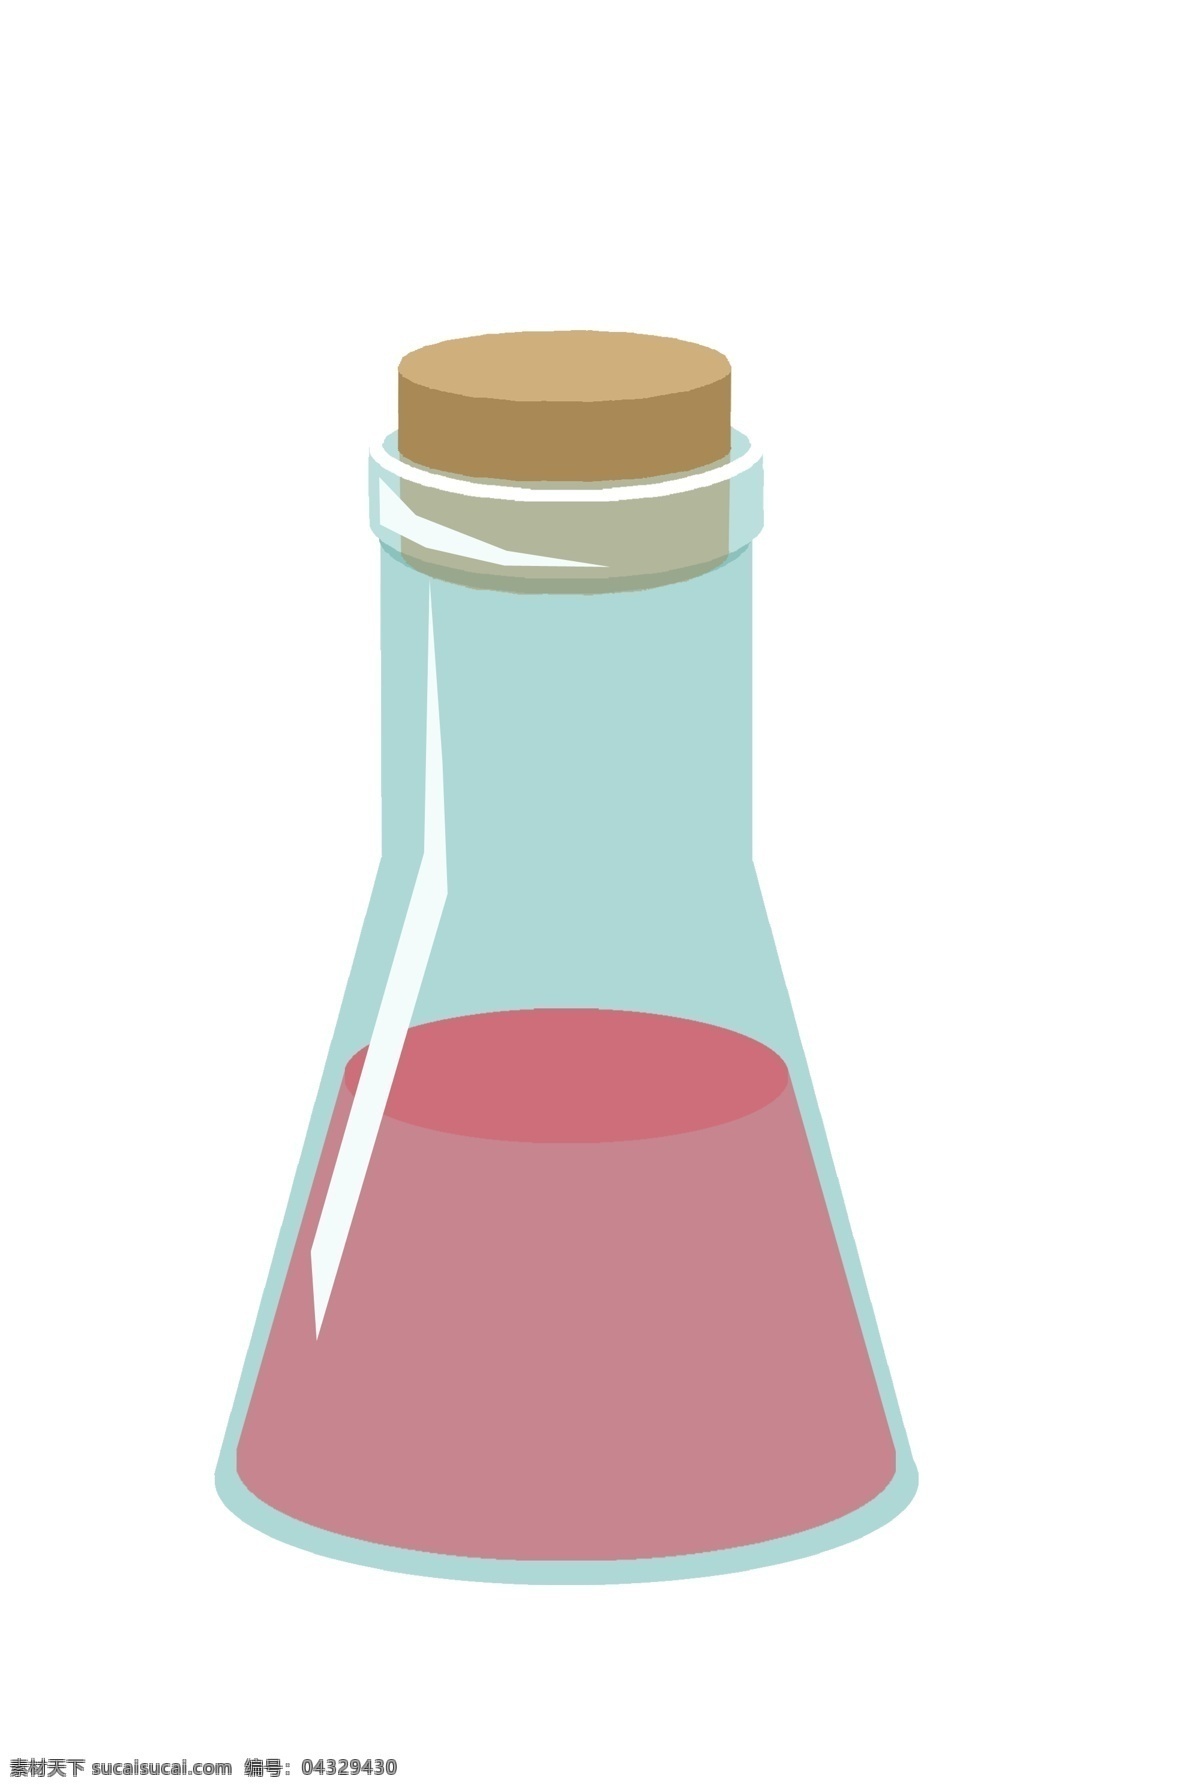 蓝色 化学 锥形 瓶 锥形瓶 烧杯 卡通烧杯插画 化学实验 实验用品 红色的液体 烧杯插画 锥形烧杯